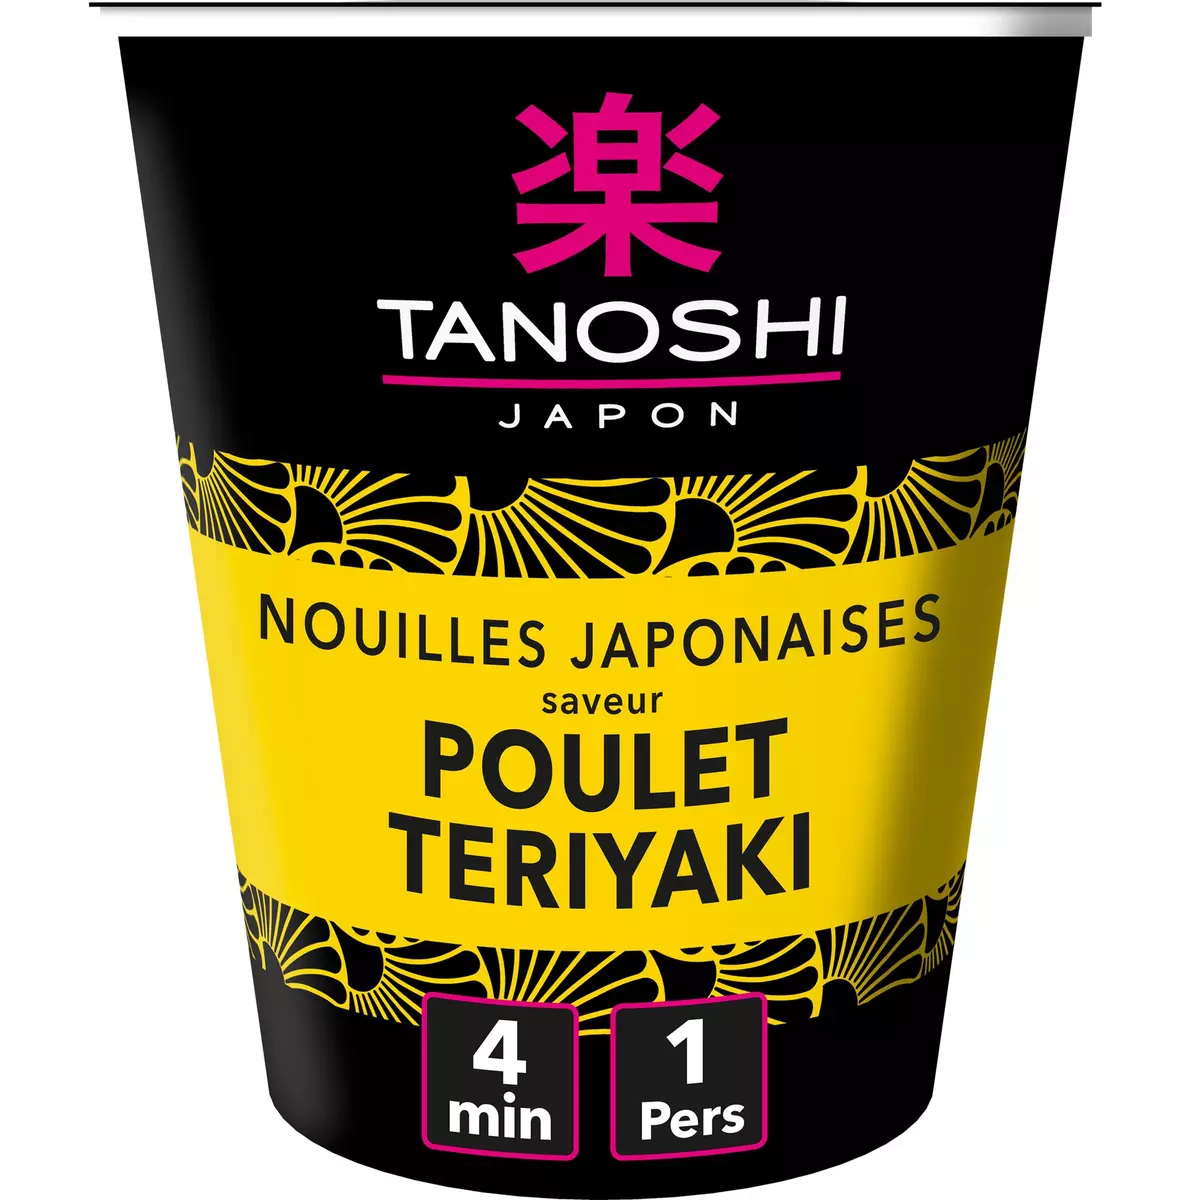 TANOSHI Cup nouilles japonaises instantanées saveur poulet teriyaki 1 personne 65g